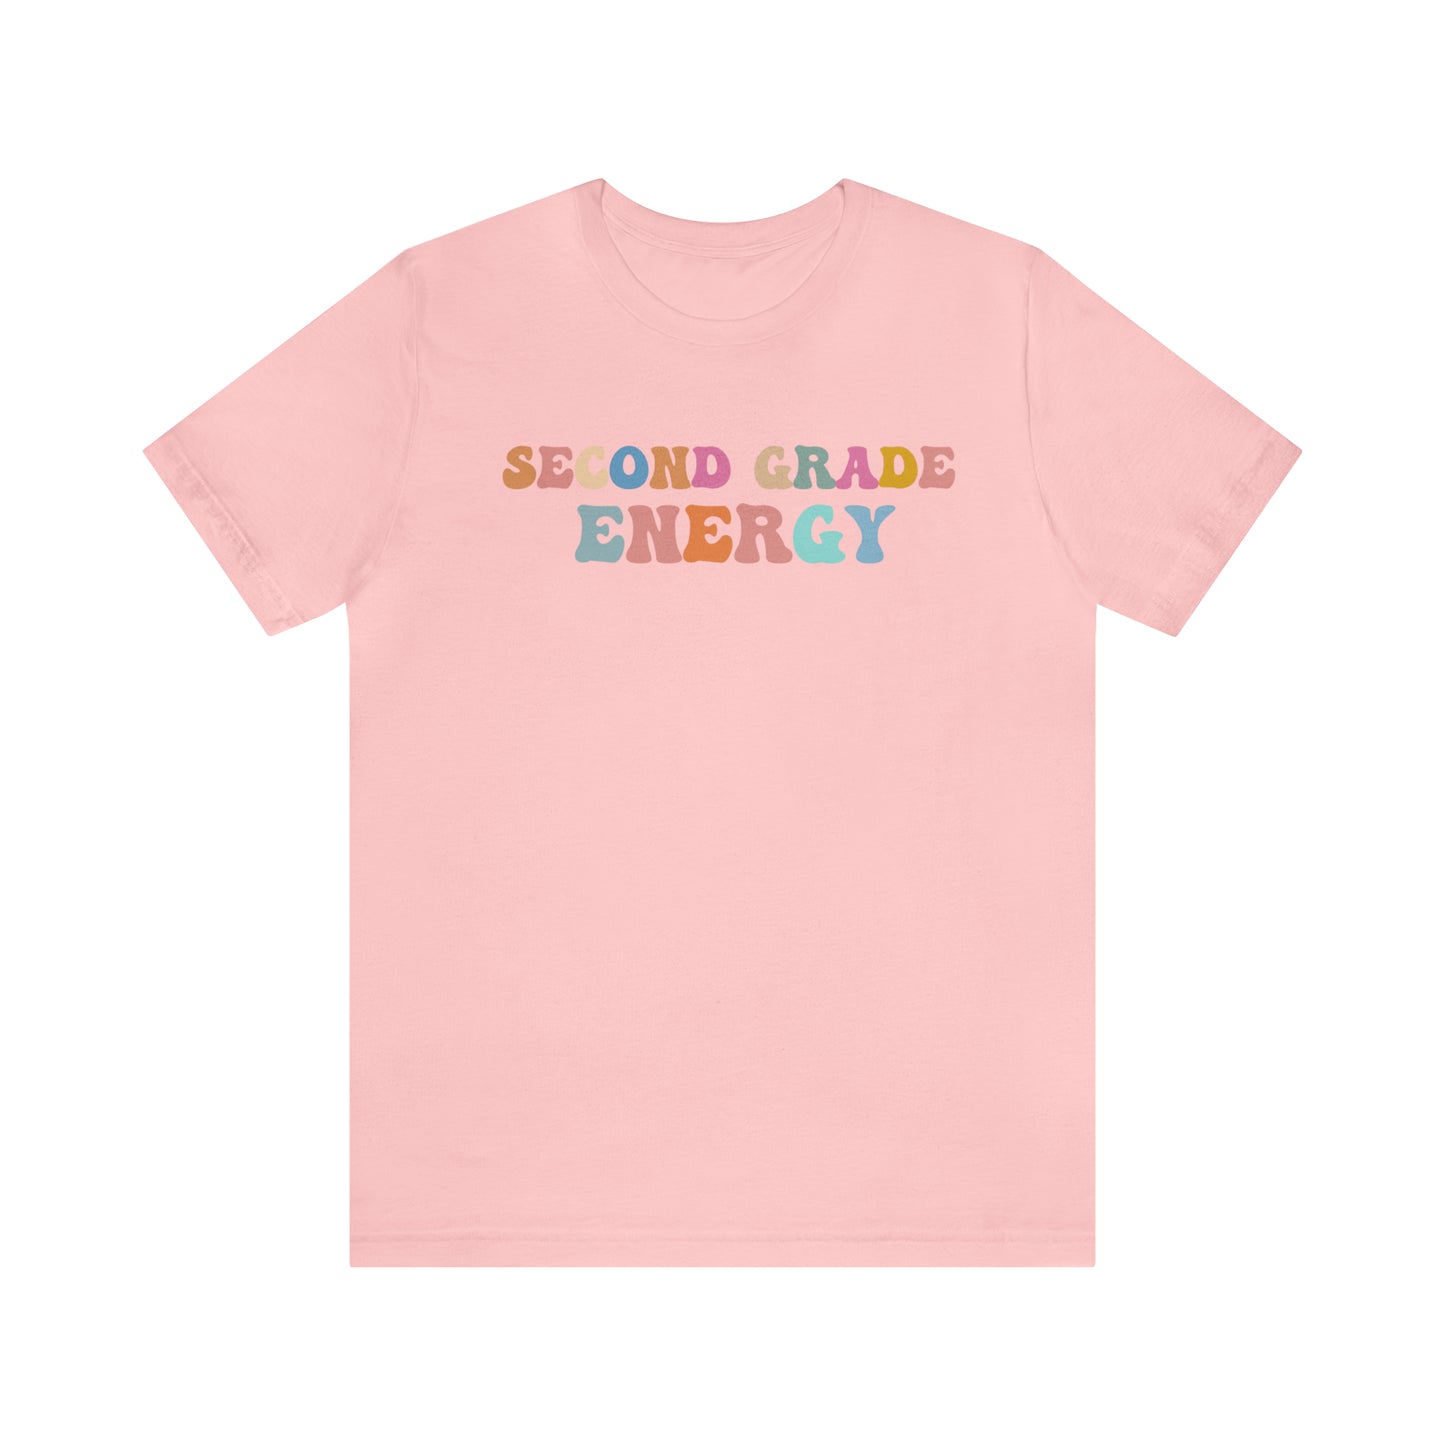 Cute Teacher Shirt, Second Grade Energy Shirt, Shirt for Second Grade, Teacher Appreciation Shirt, Best Teacher Shirt, T494